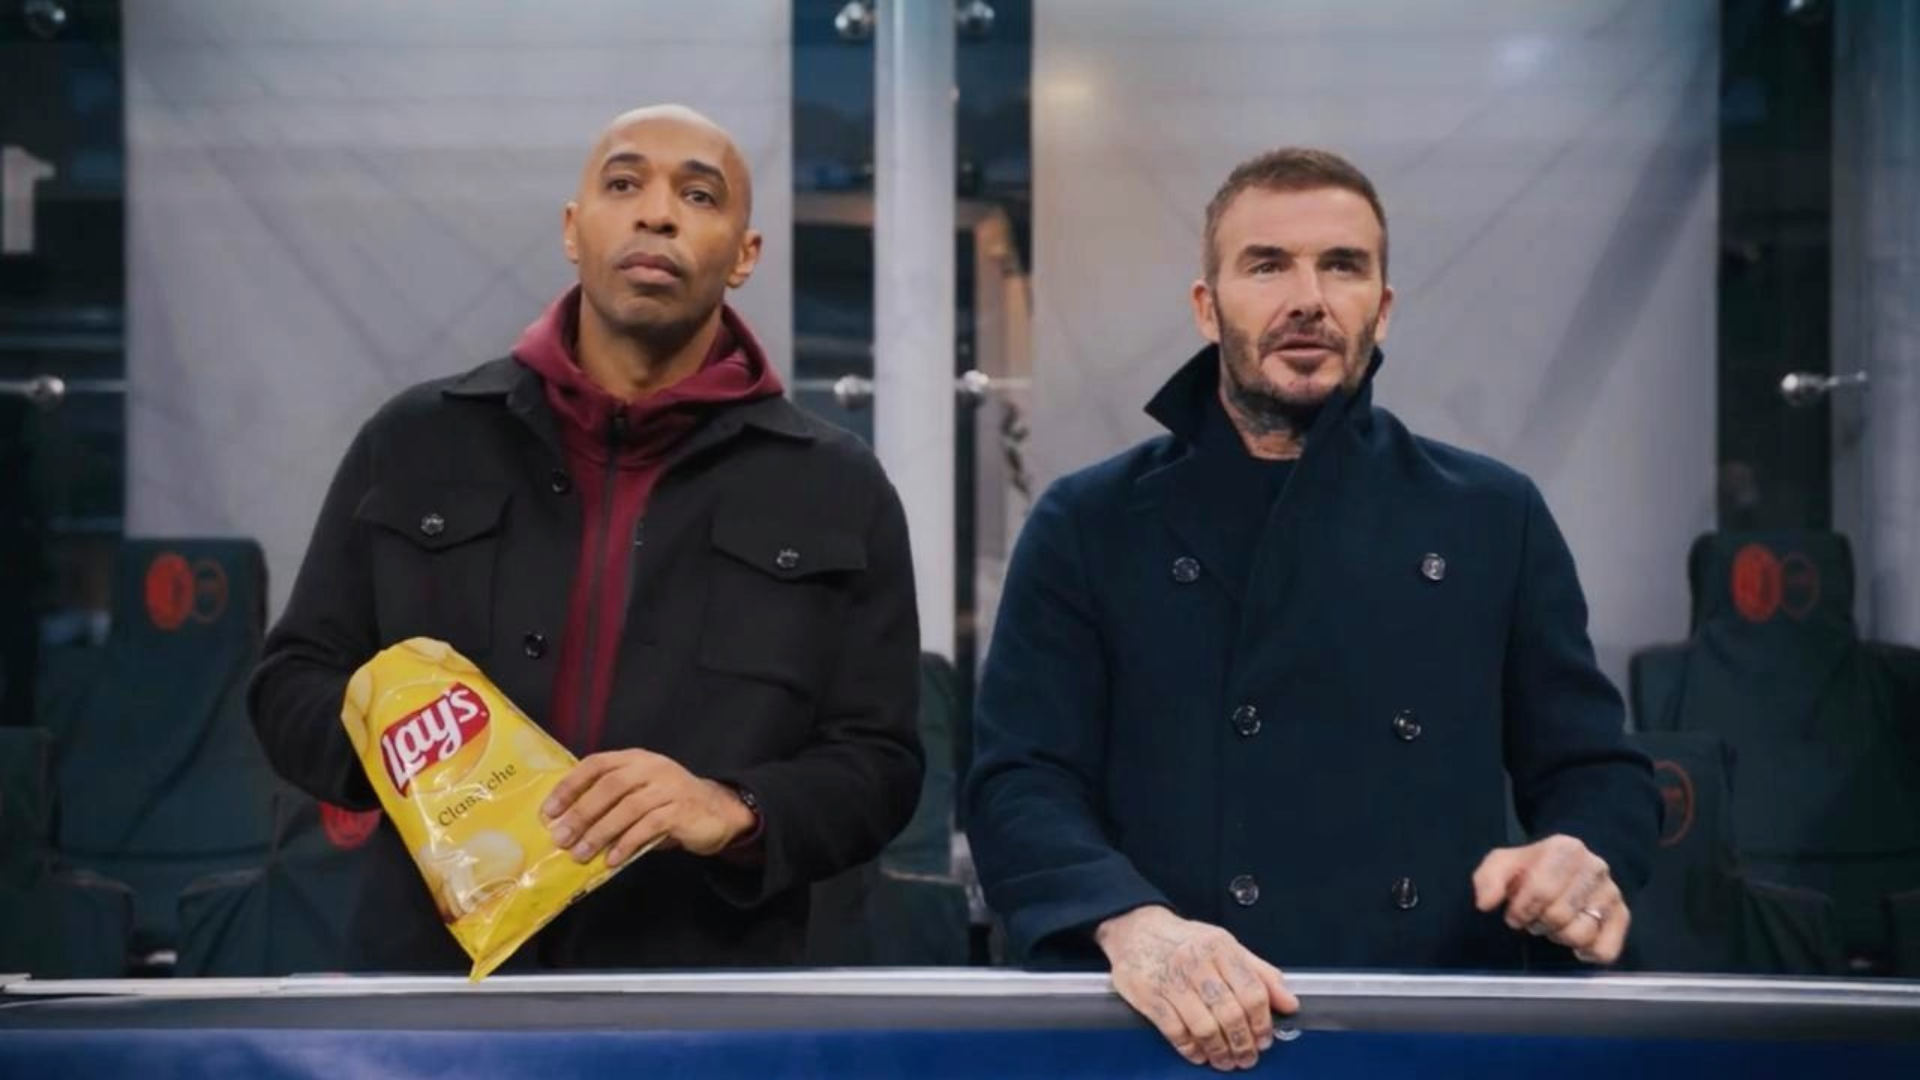 David Beckham e Thierry Henry estrelam campanha da Lay's para UEFA Champions League